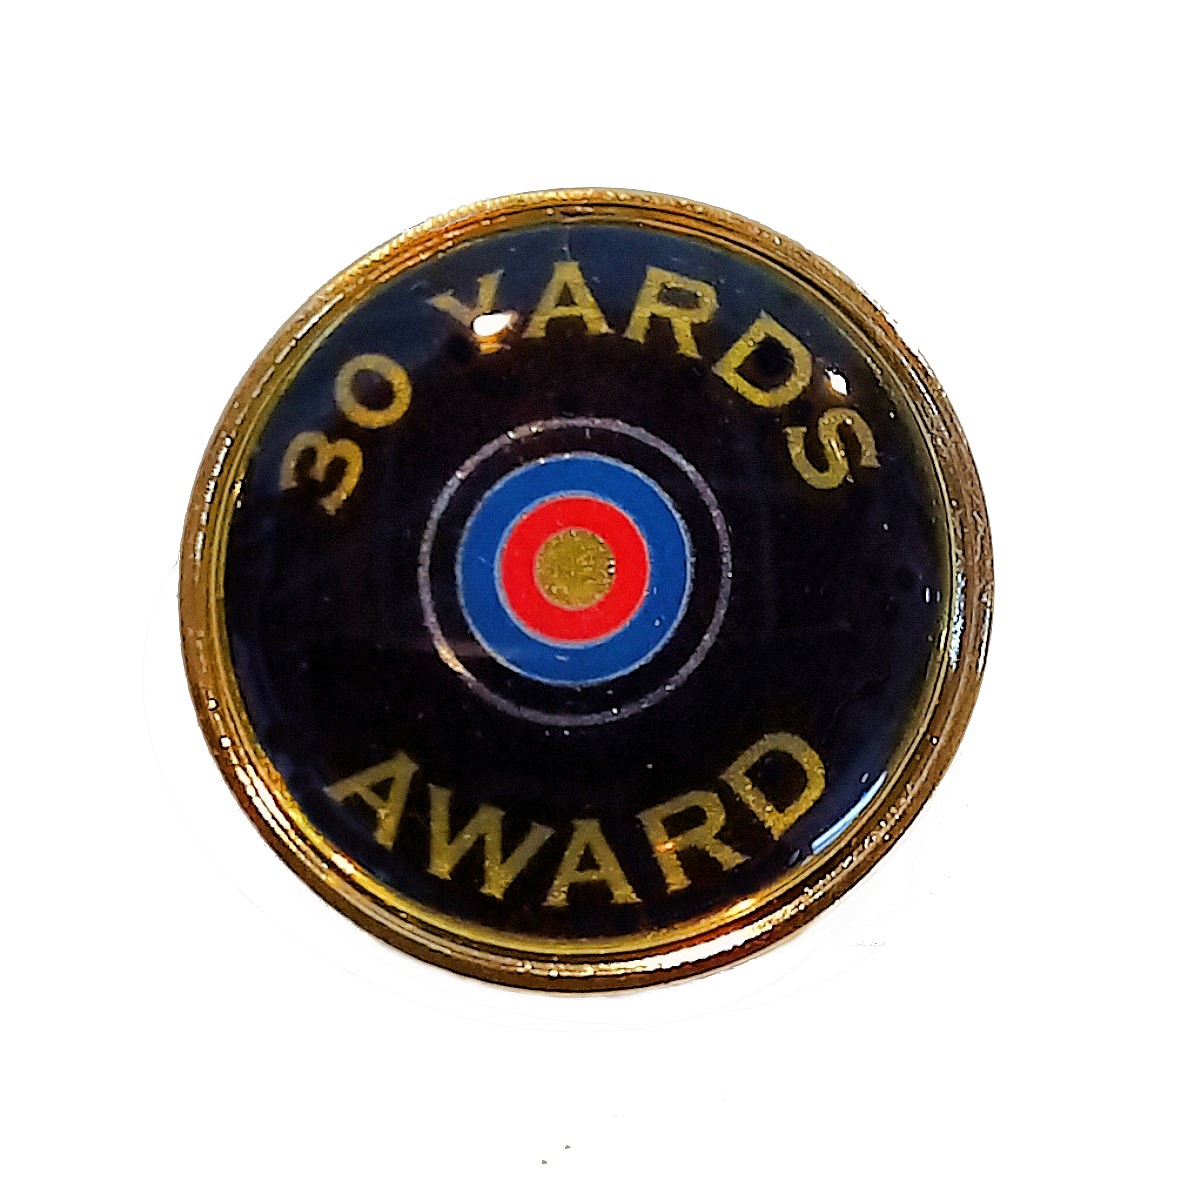 Yards Award premium badge